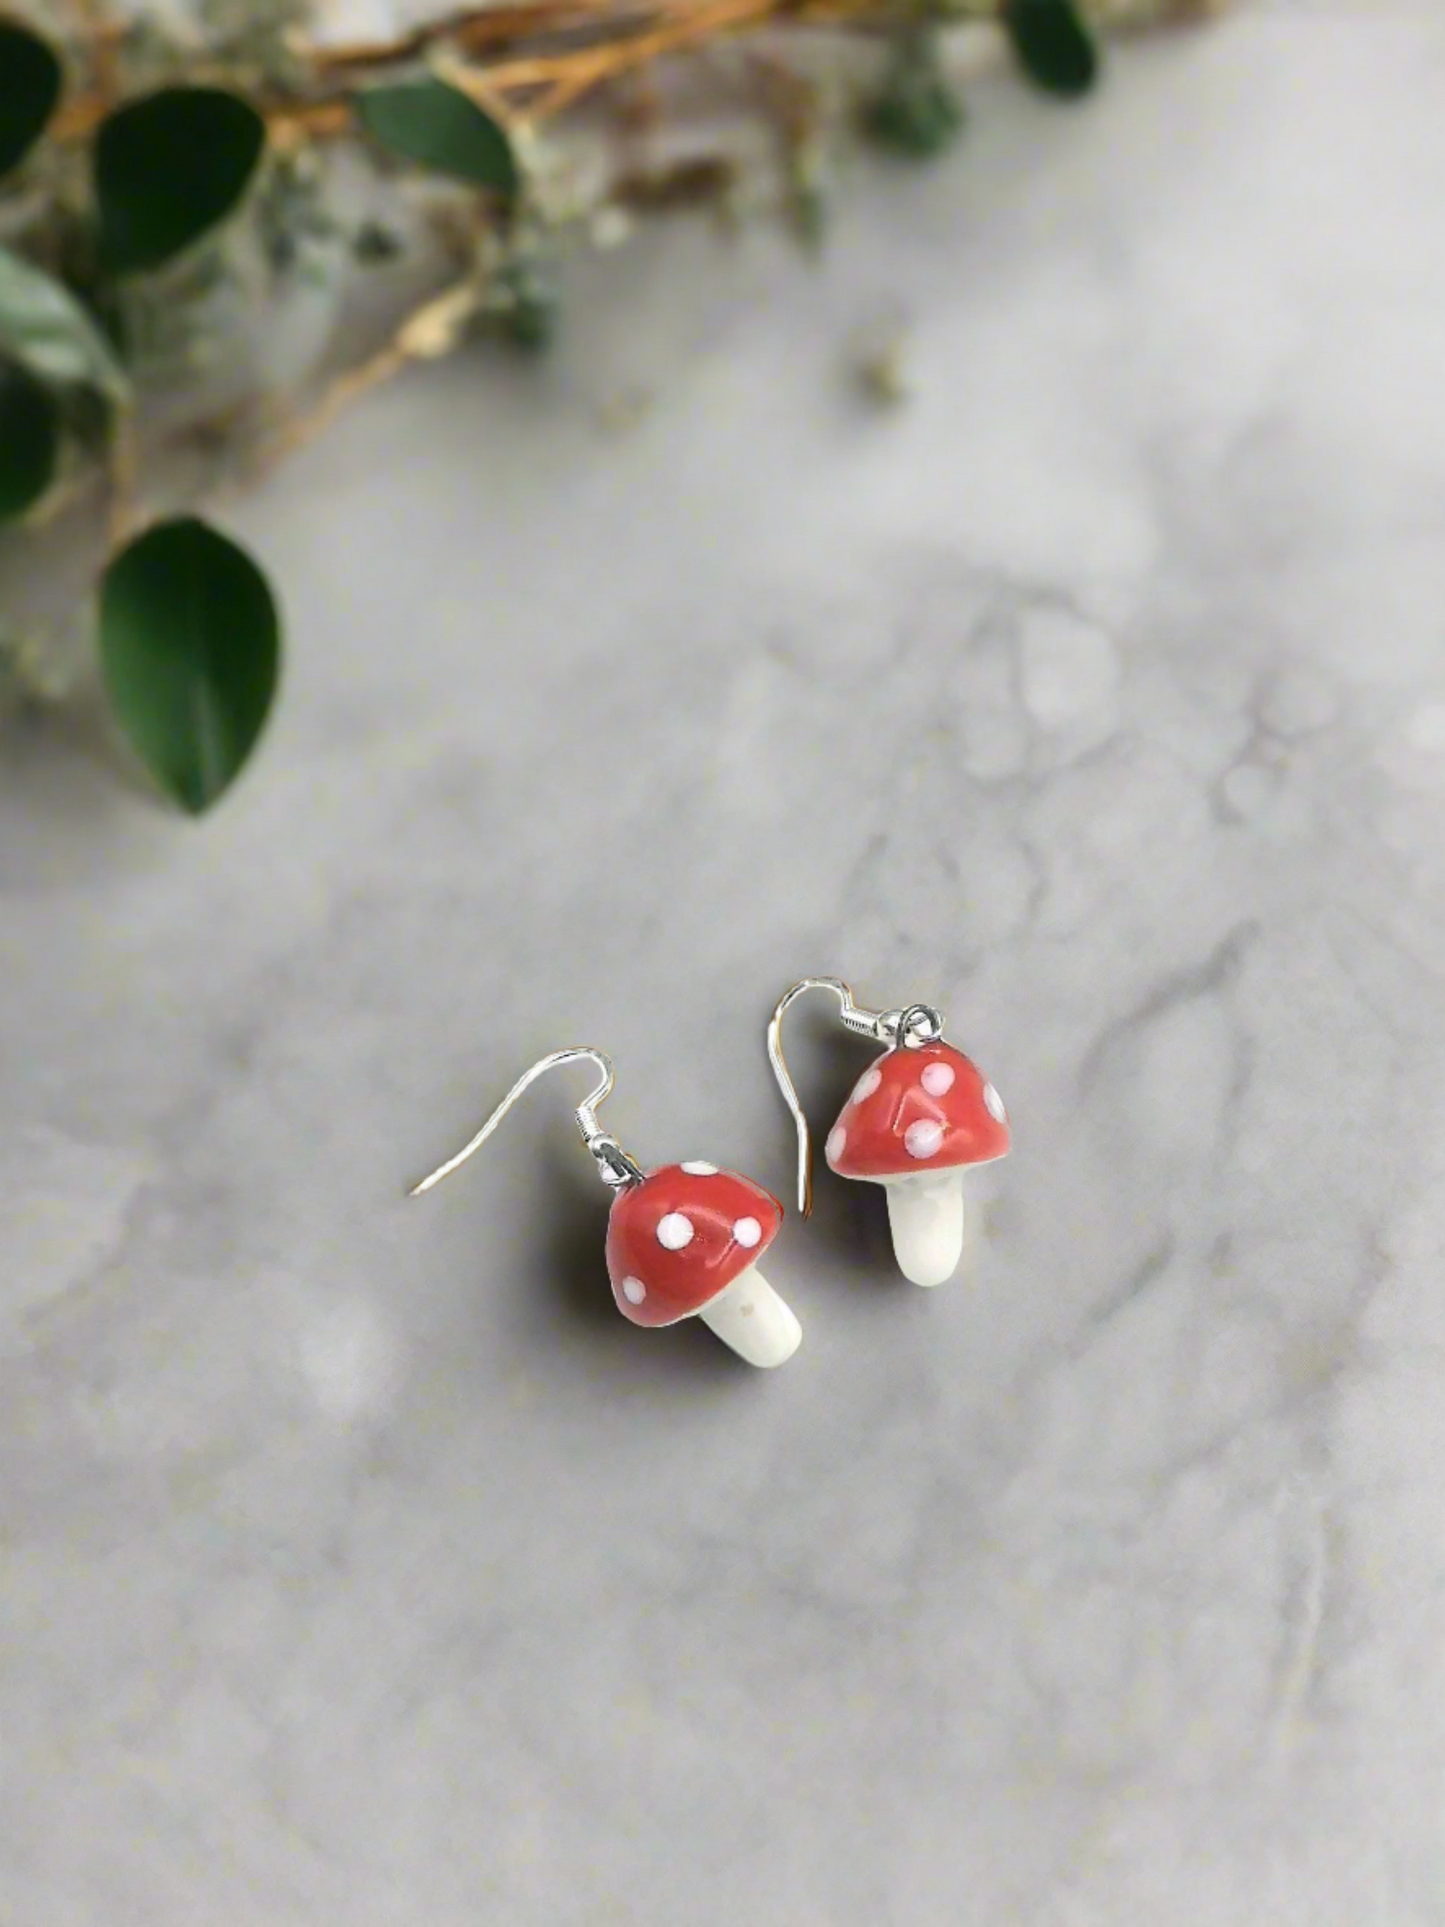 Handmade Ceramic Red Mushroom Earrings For Women, Cottagecore Artisan Jewelry Gift For Her, Best Boho Sterling Silver Cute Dangle Earrings